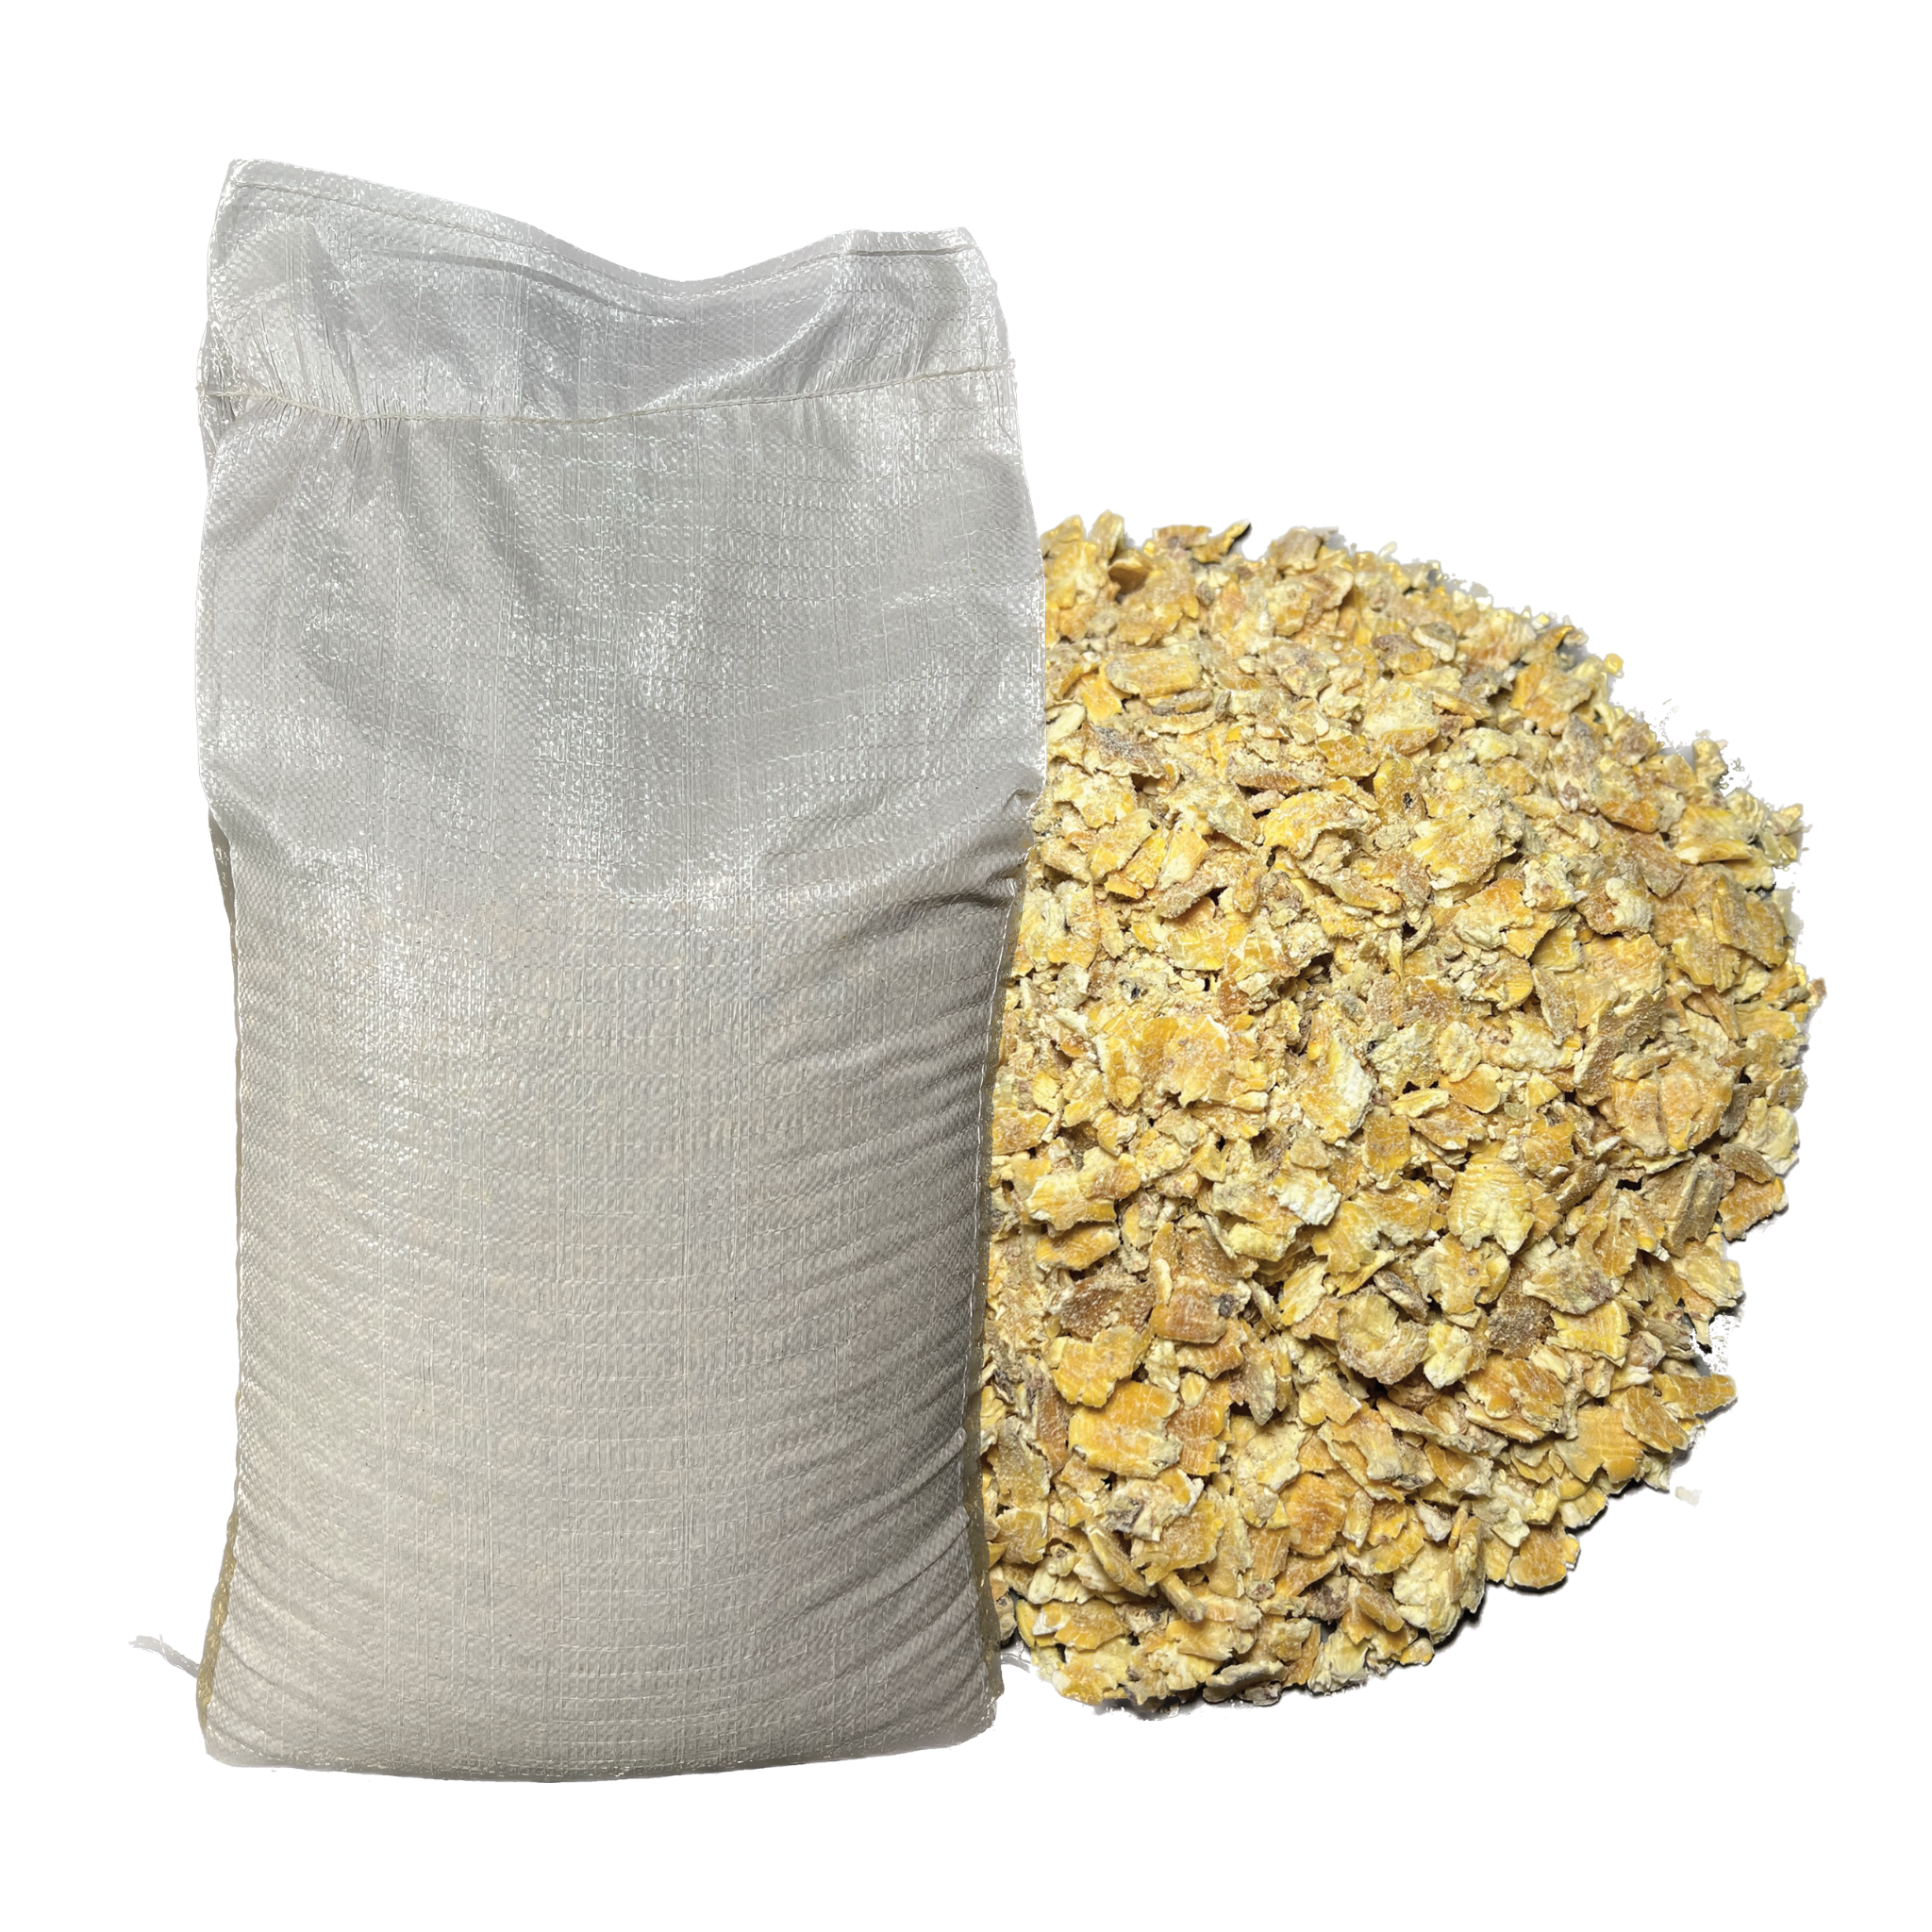 Premium Whole Grain Corn, Feed for Most Livestock